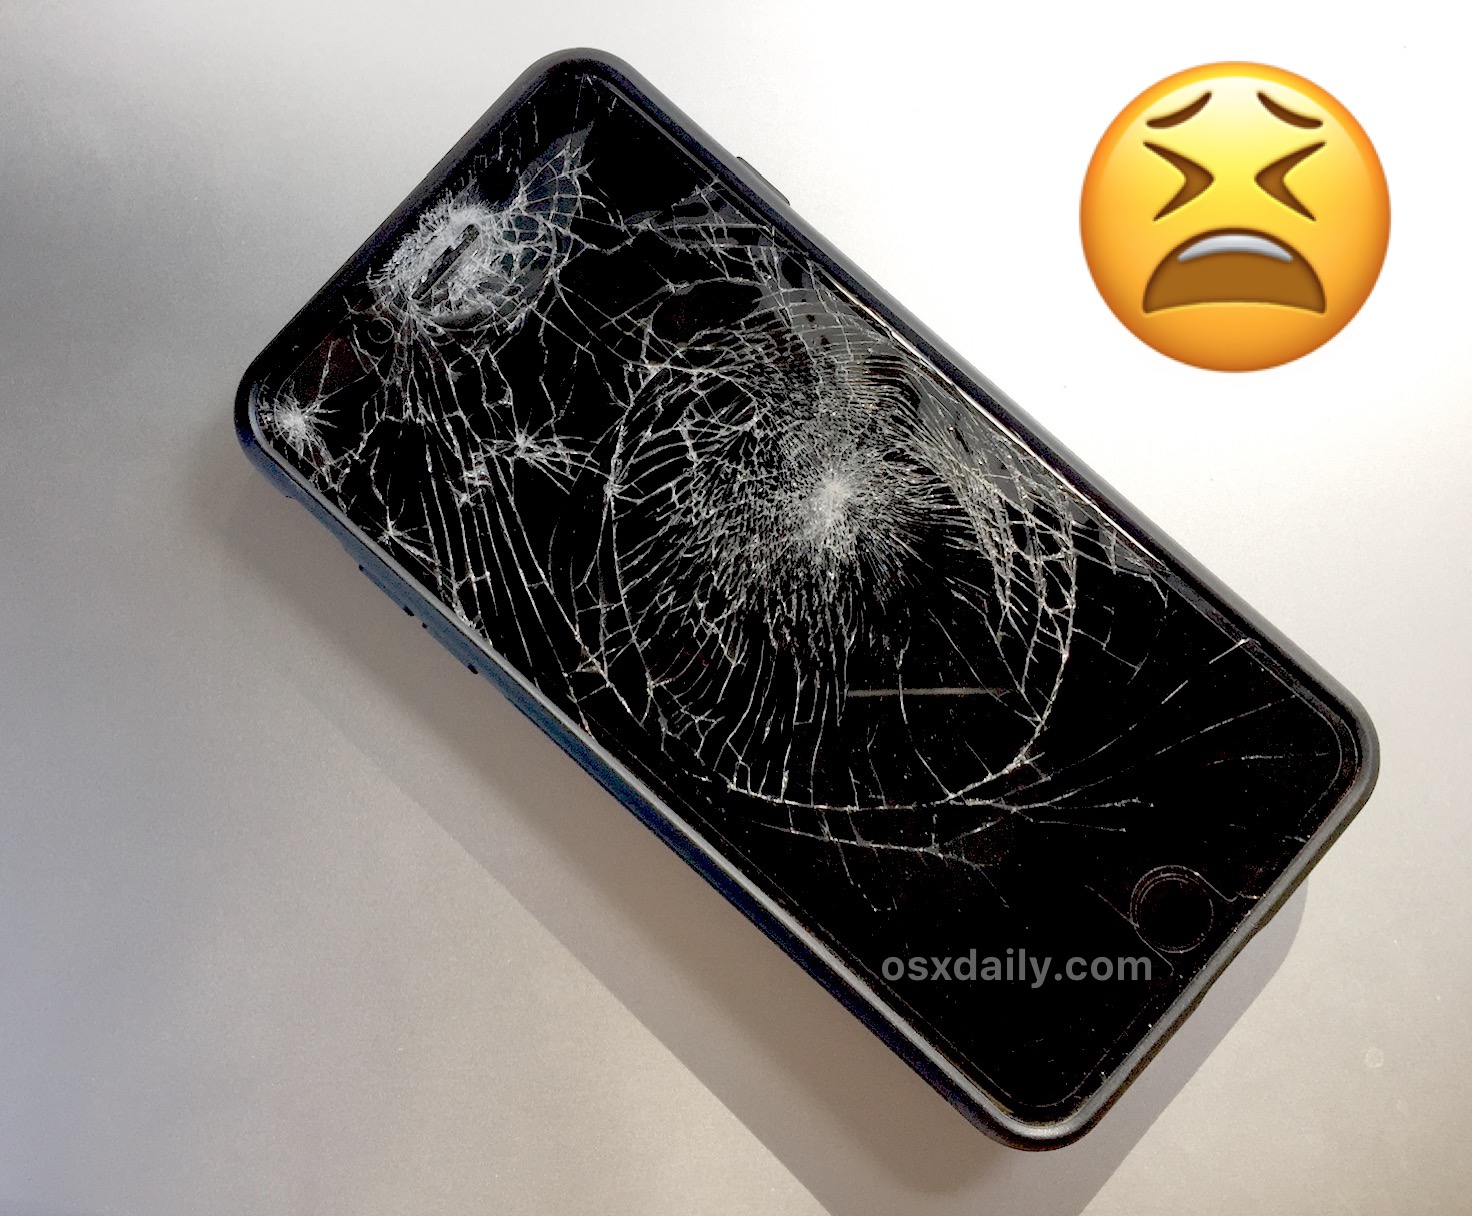 Broken iPhone Screen? Here’s How to Repair & Get it Fixed